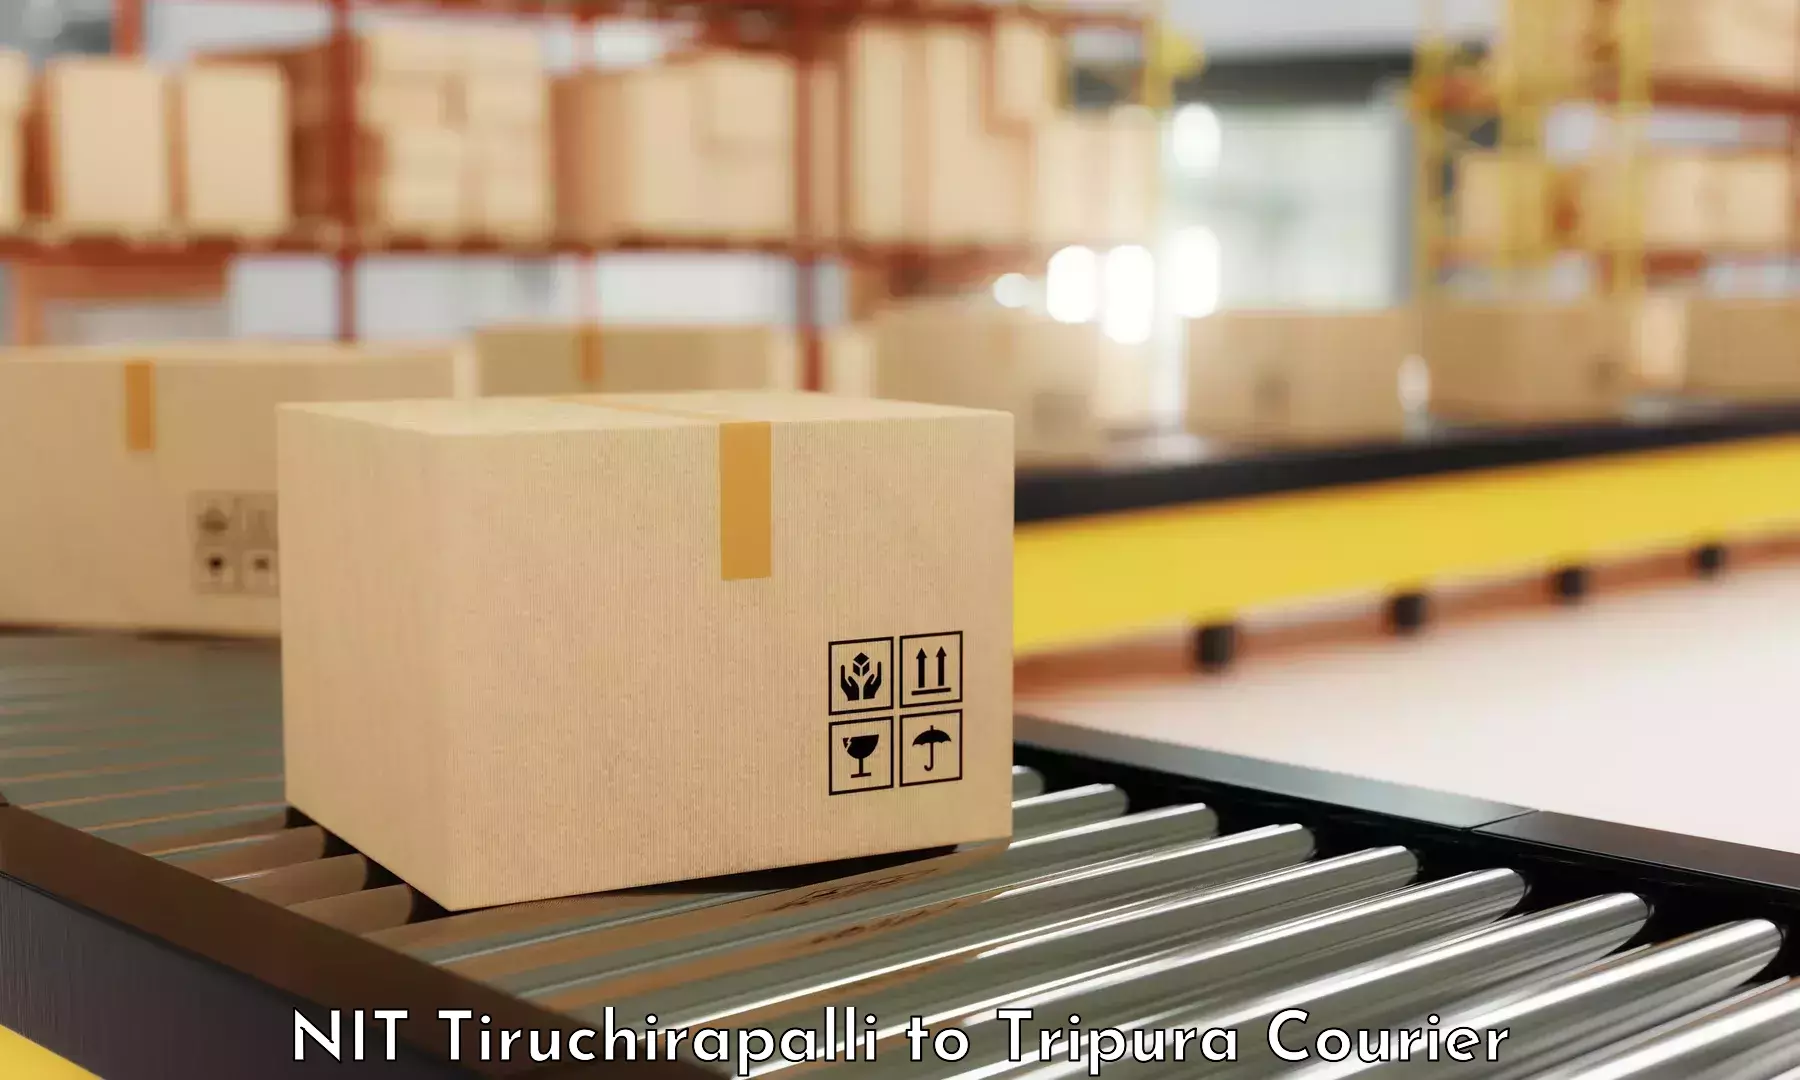 Cargo courier service NIT Tiruchirapalli to Udaipur Tripura